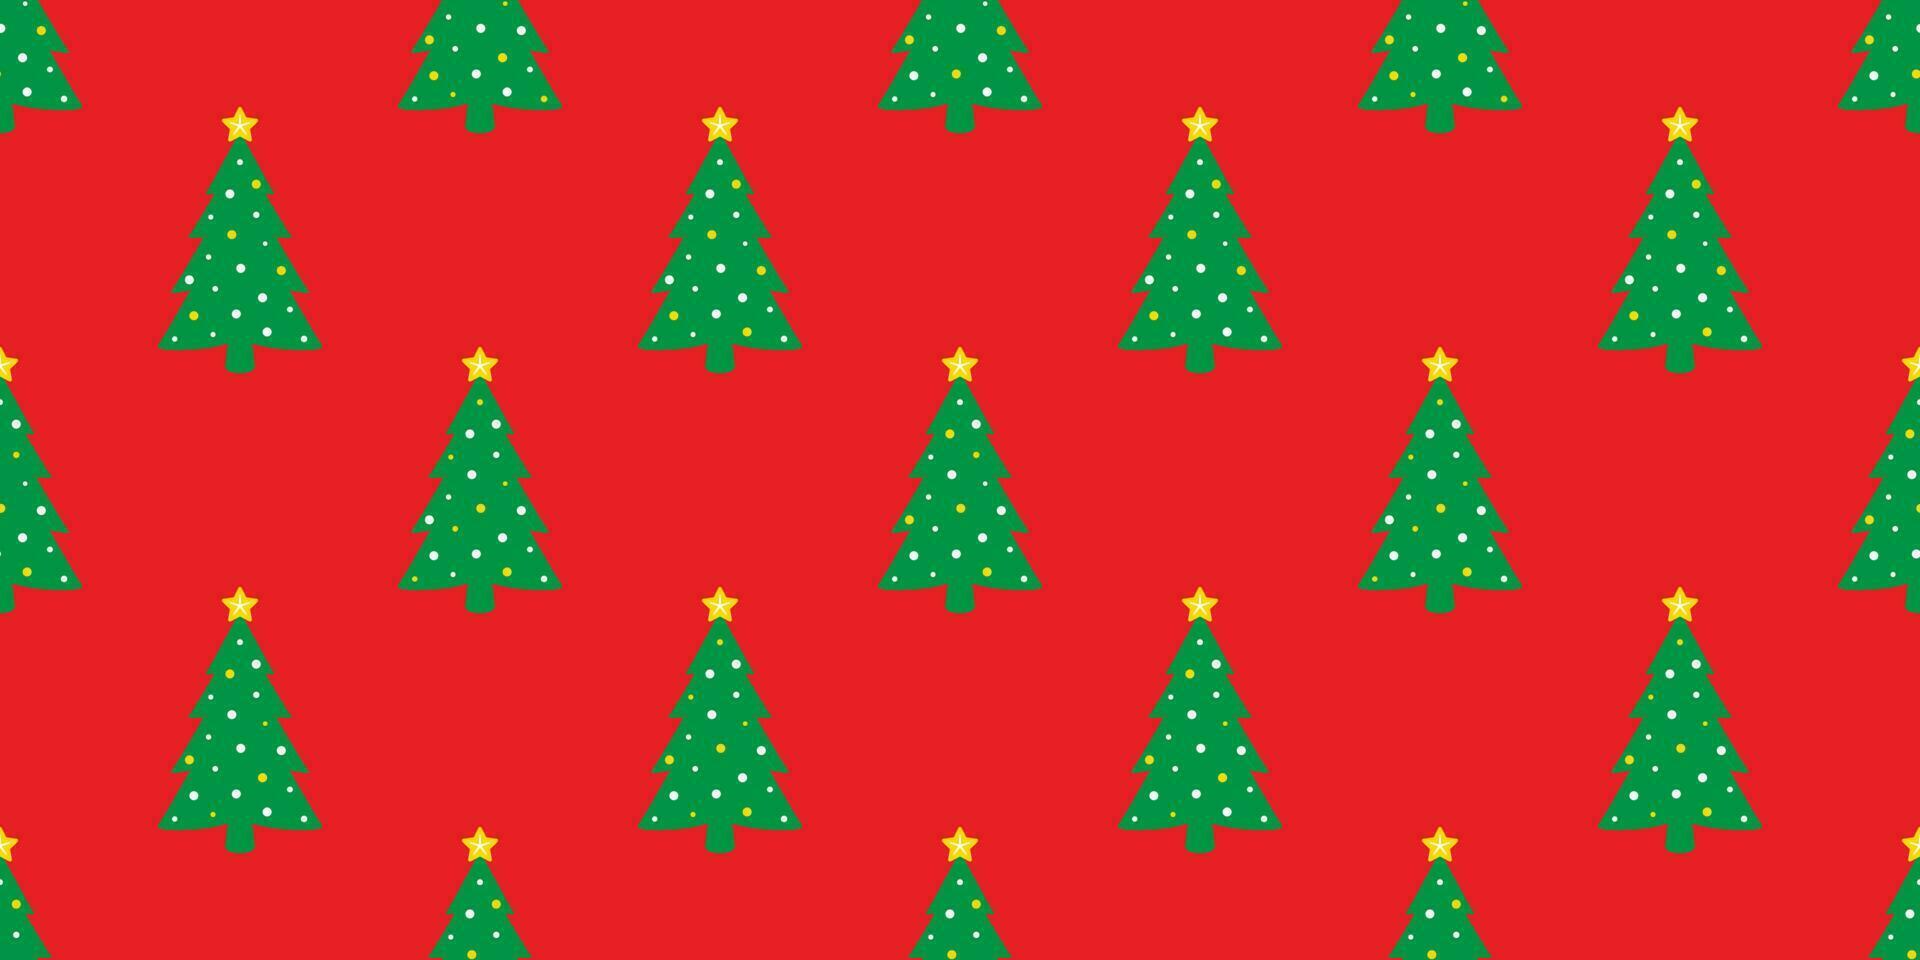 Weihnachten Baum nahtlos Muster Vektor Santa claus Schneemann Neu Jahr Fliese Hintergrund wiederholen Hintergrund Schal isoliert